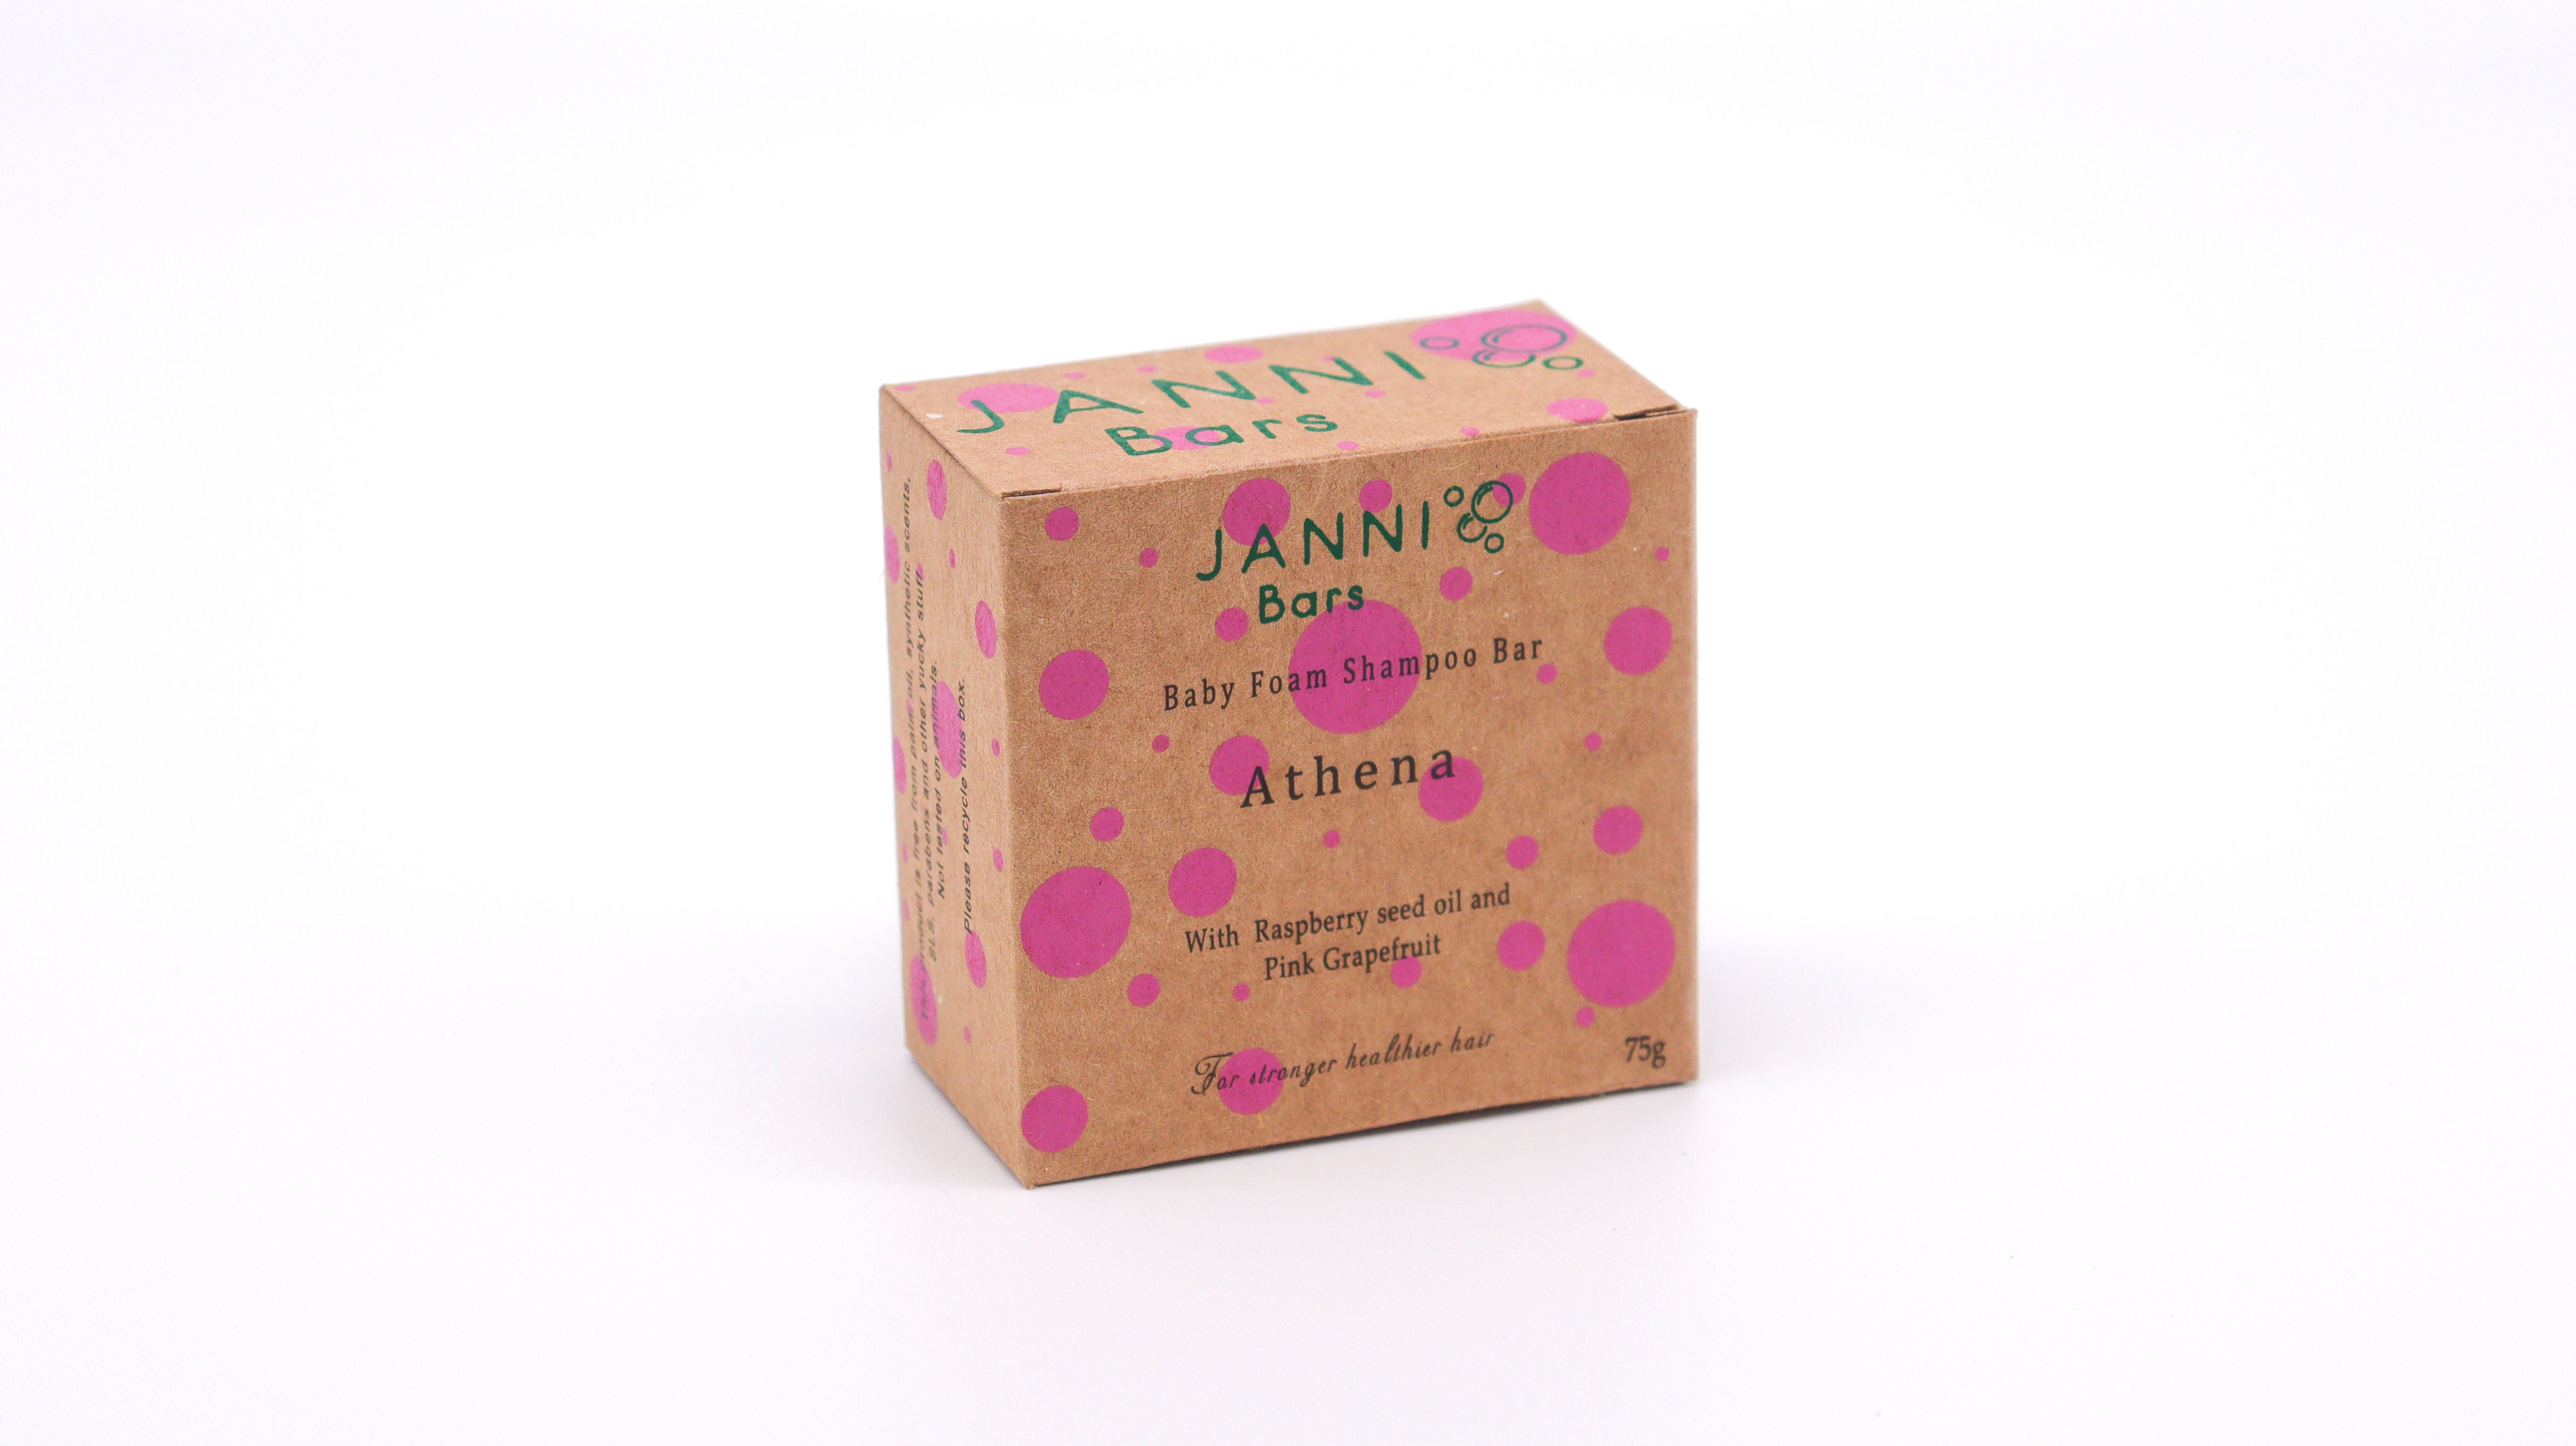 Janni Bars - Athena Shampoo Bar